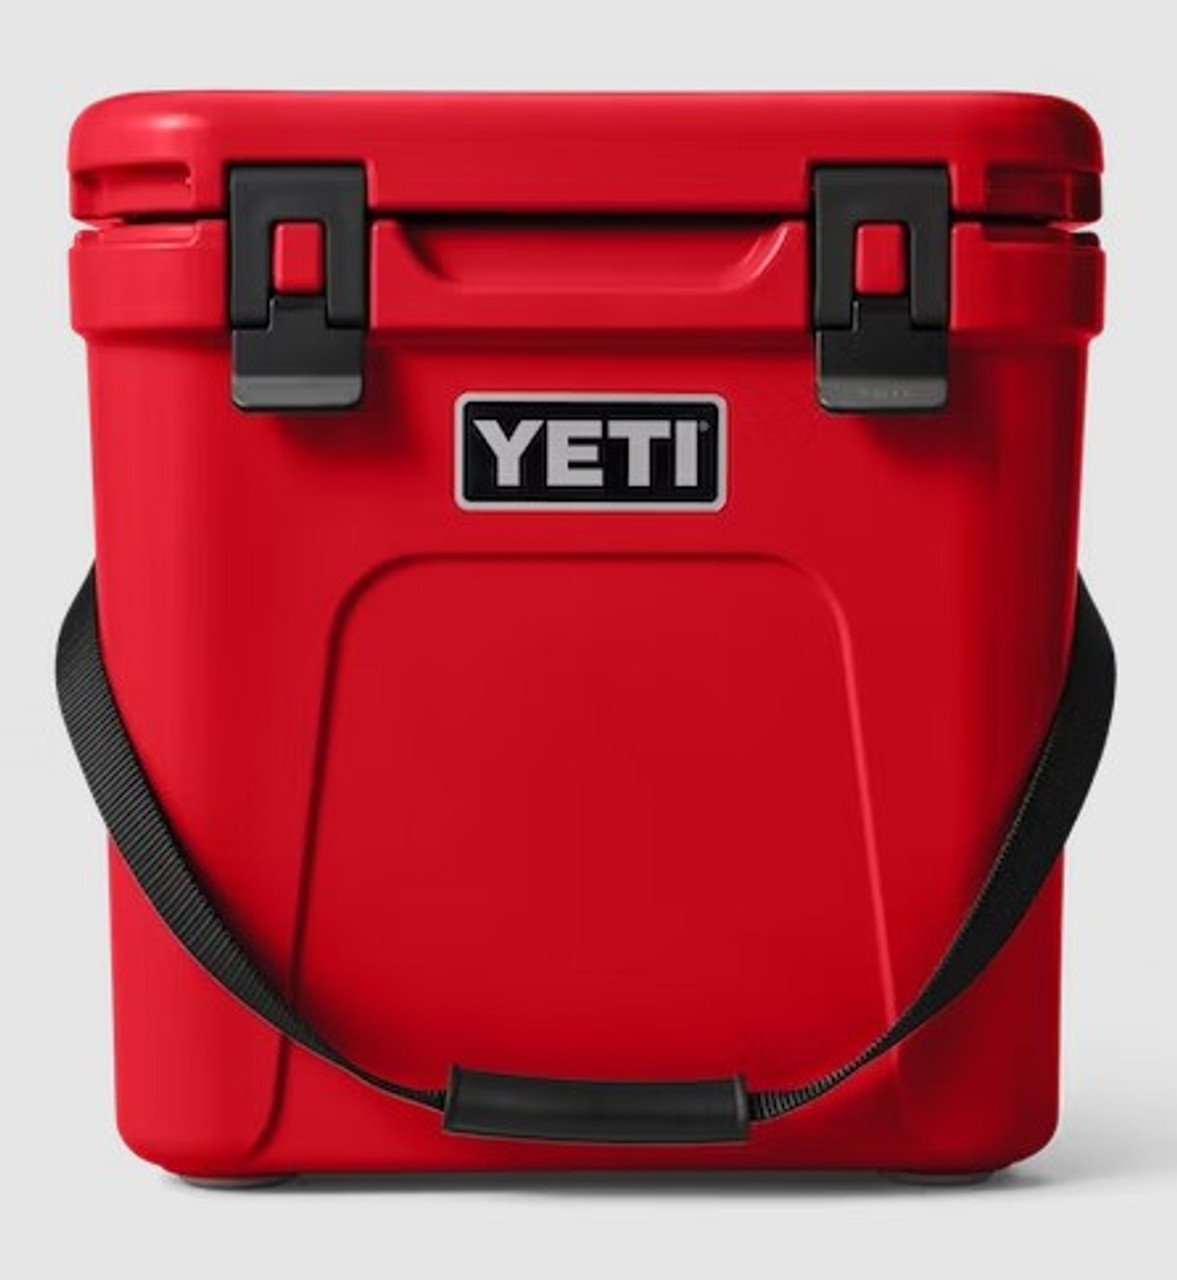 Branded Yeti Roadie 24 Hard Cooler, Charcoal